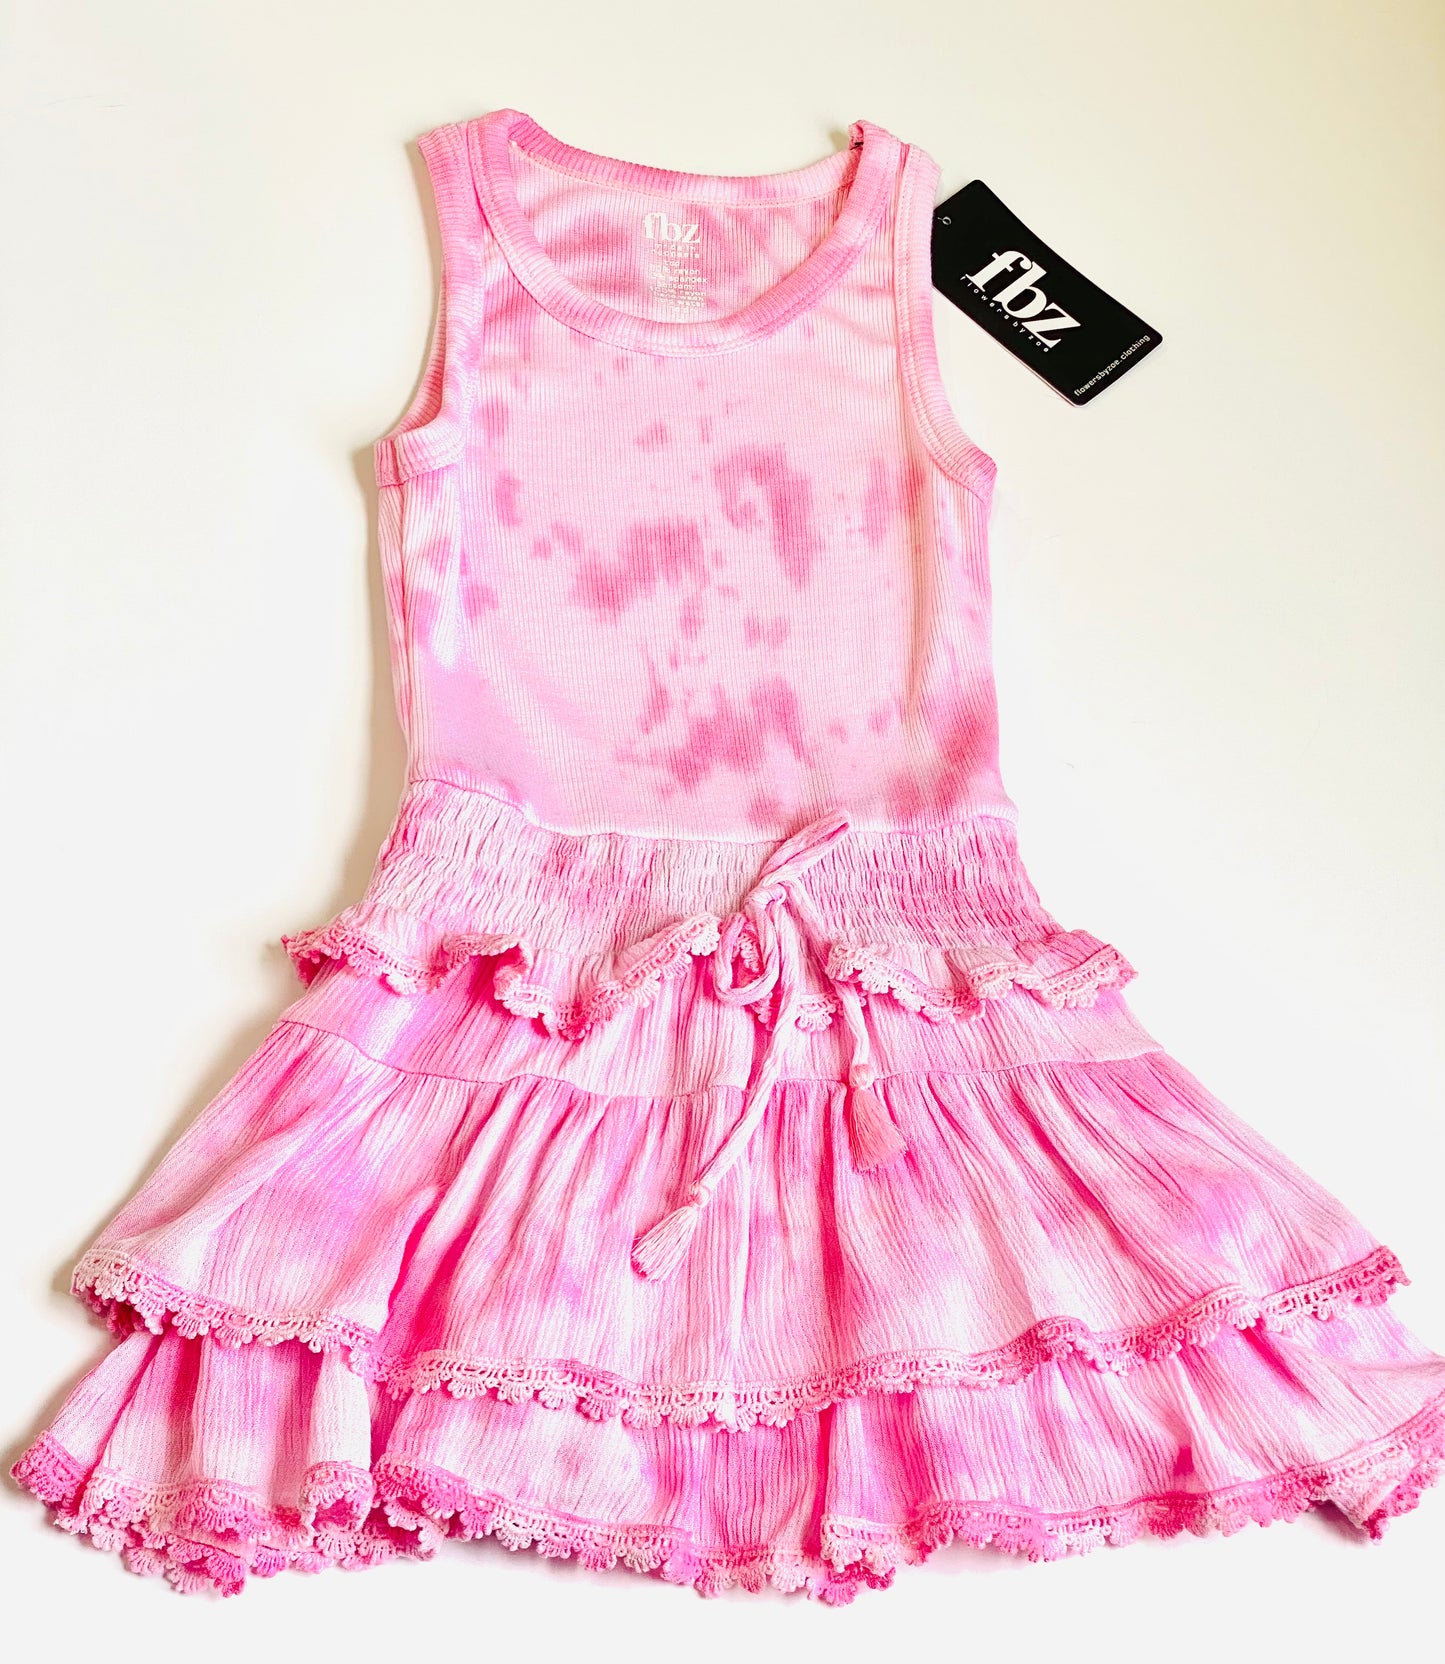 FBZ Flowers by Zoe Girls 4-6X Pink Smoke Tie Dye Dress